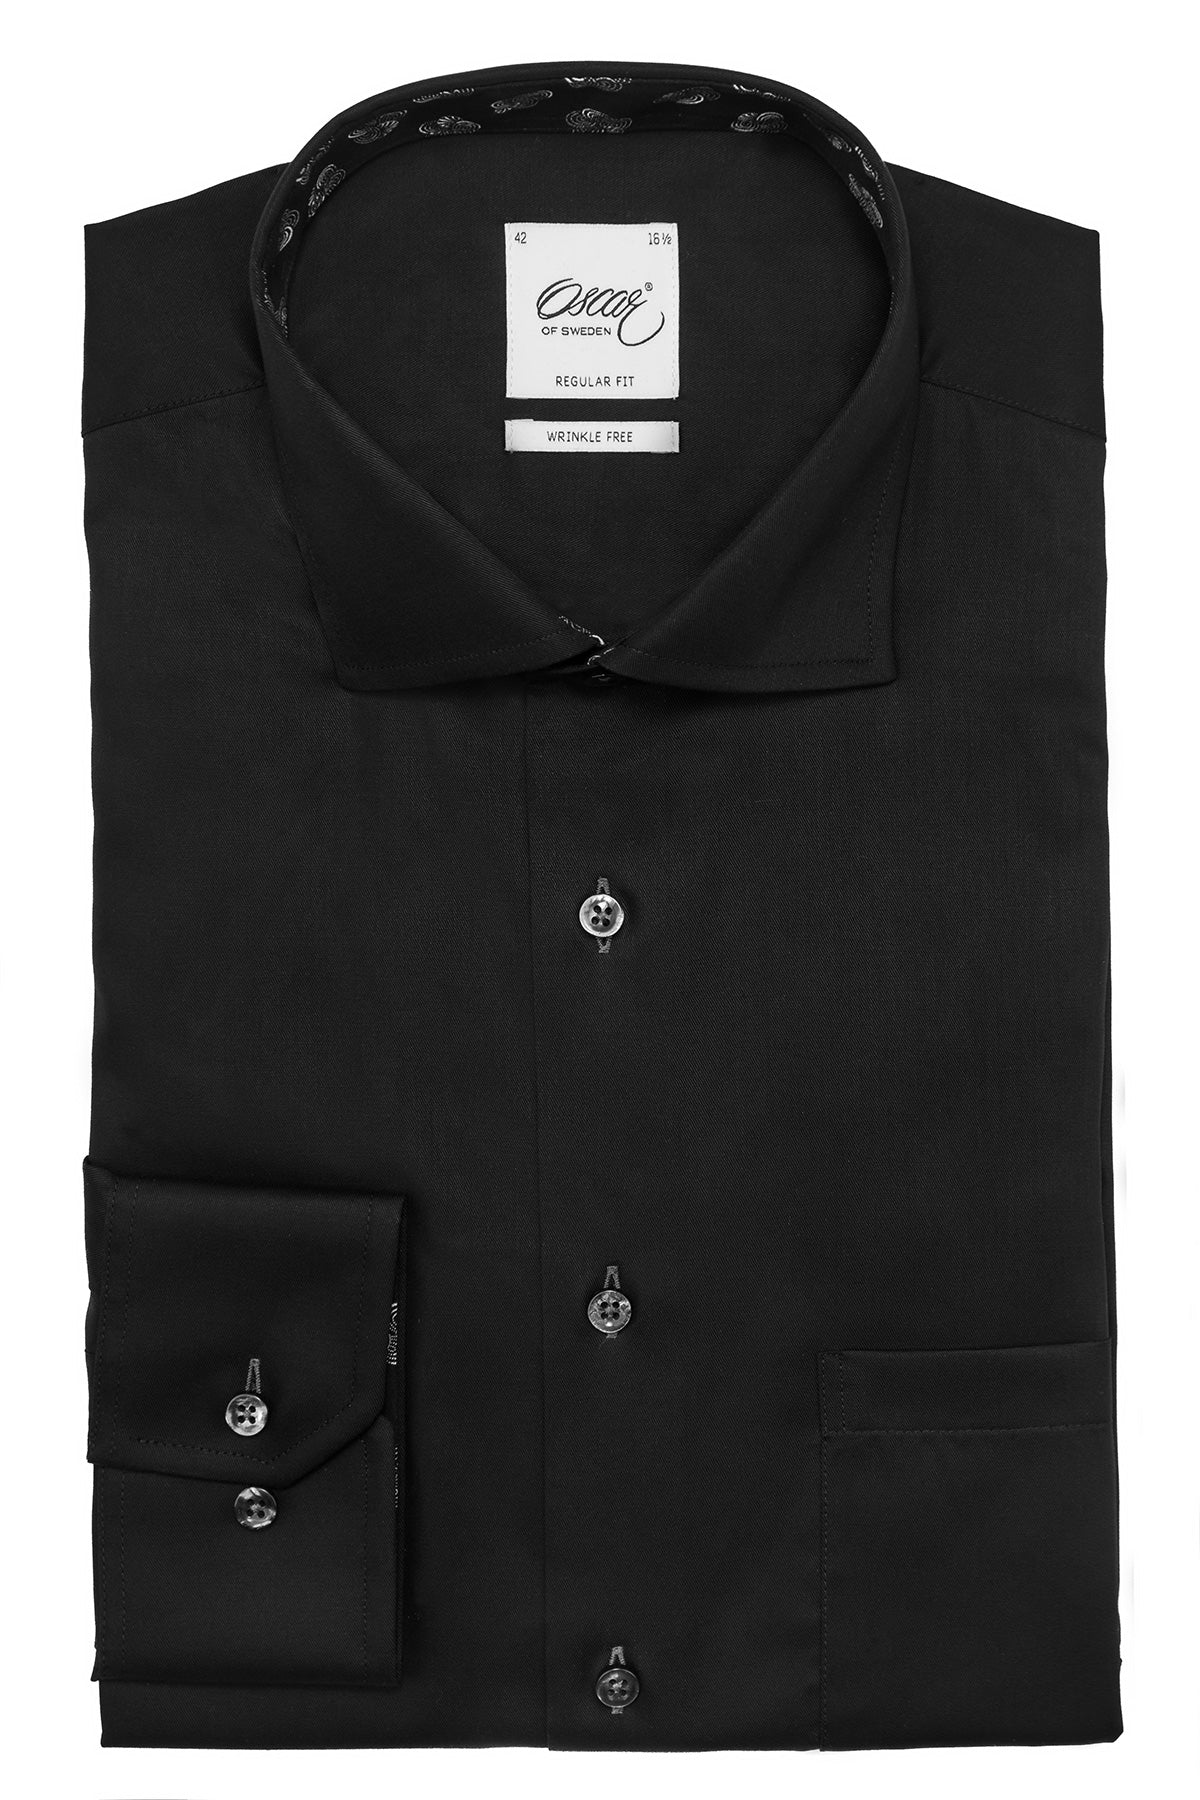 Black regular fit shirt with contrast details